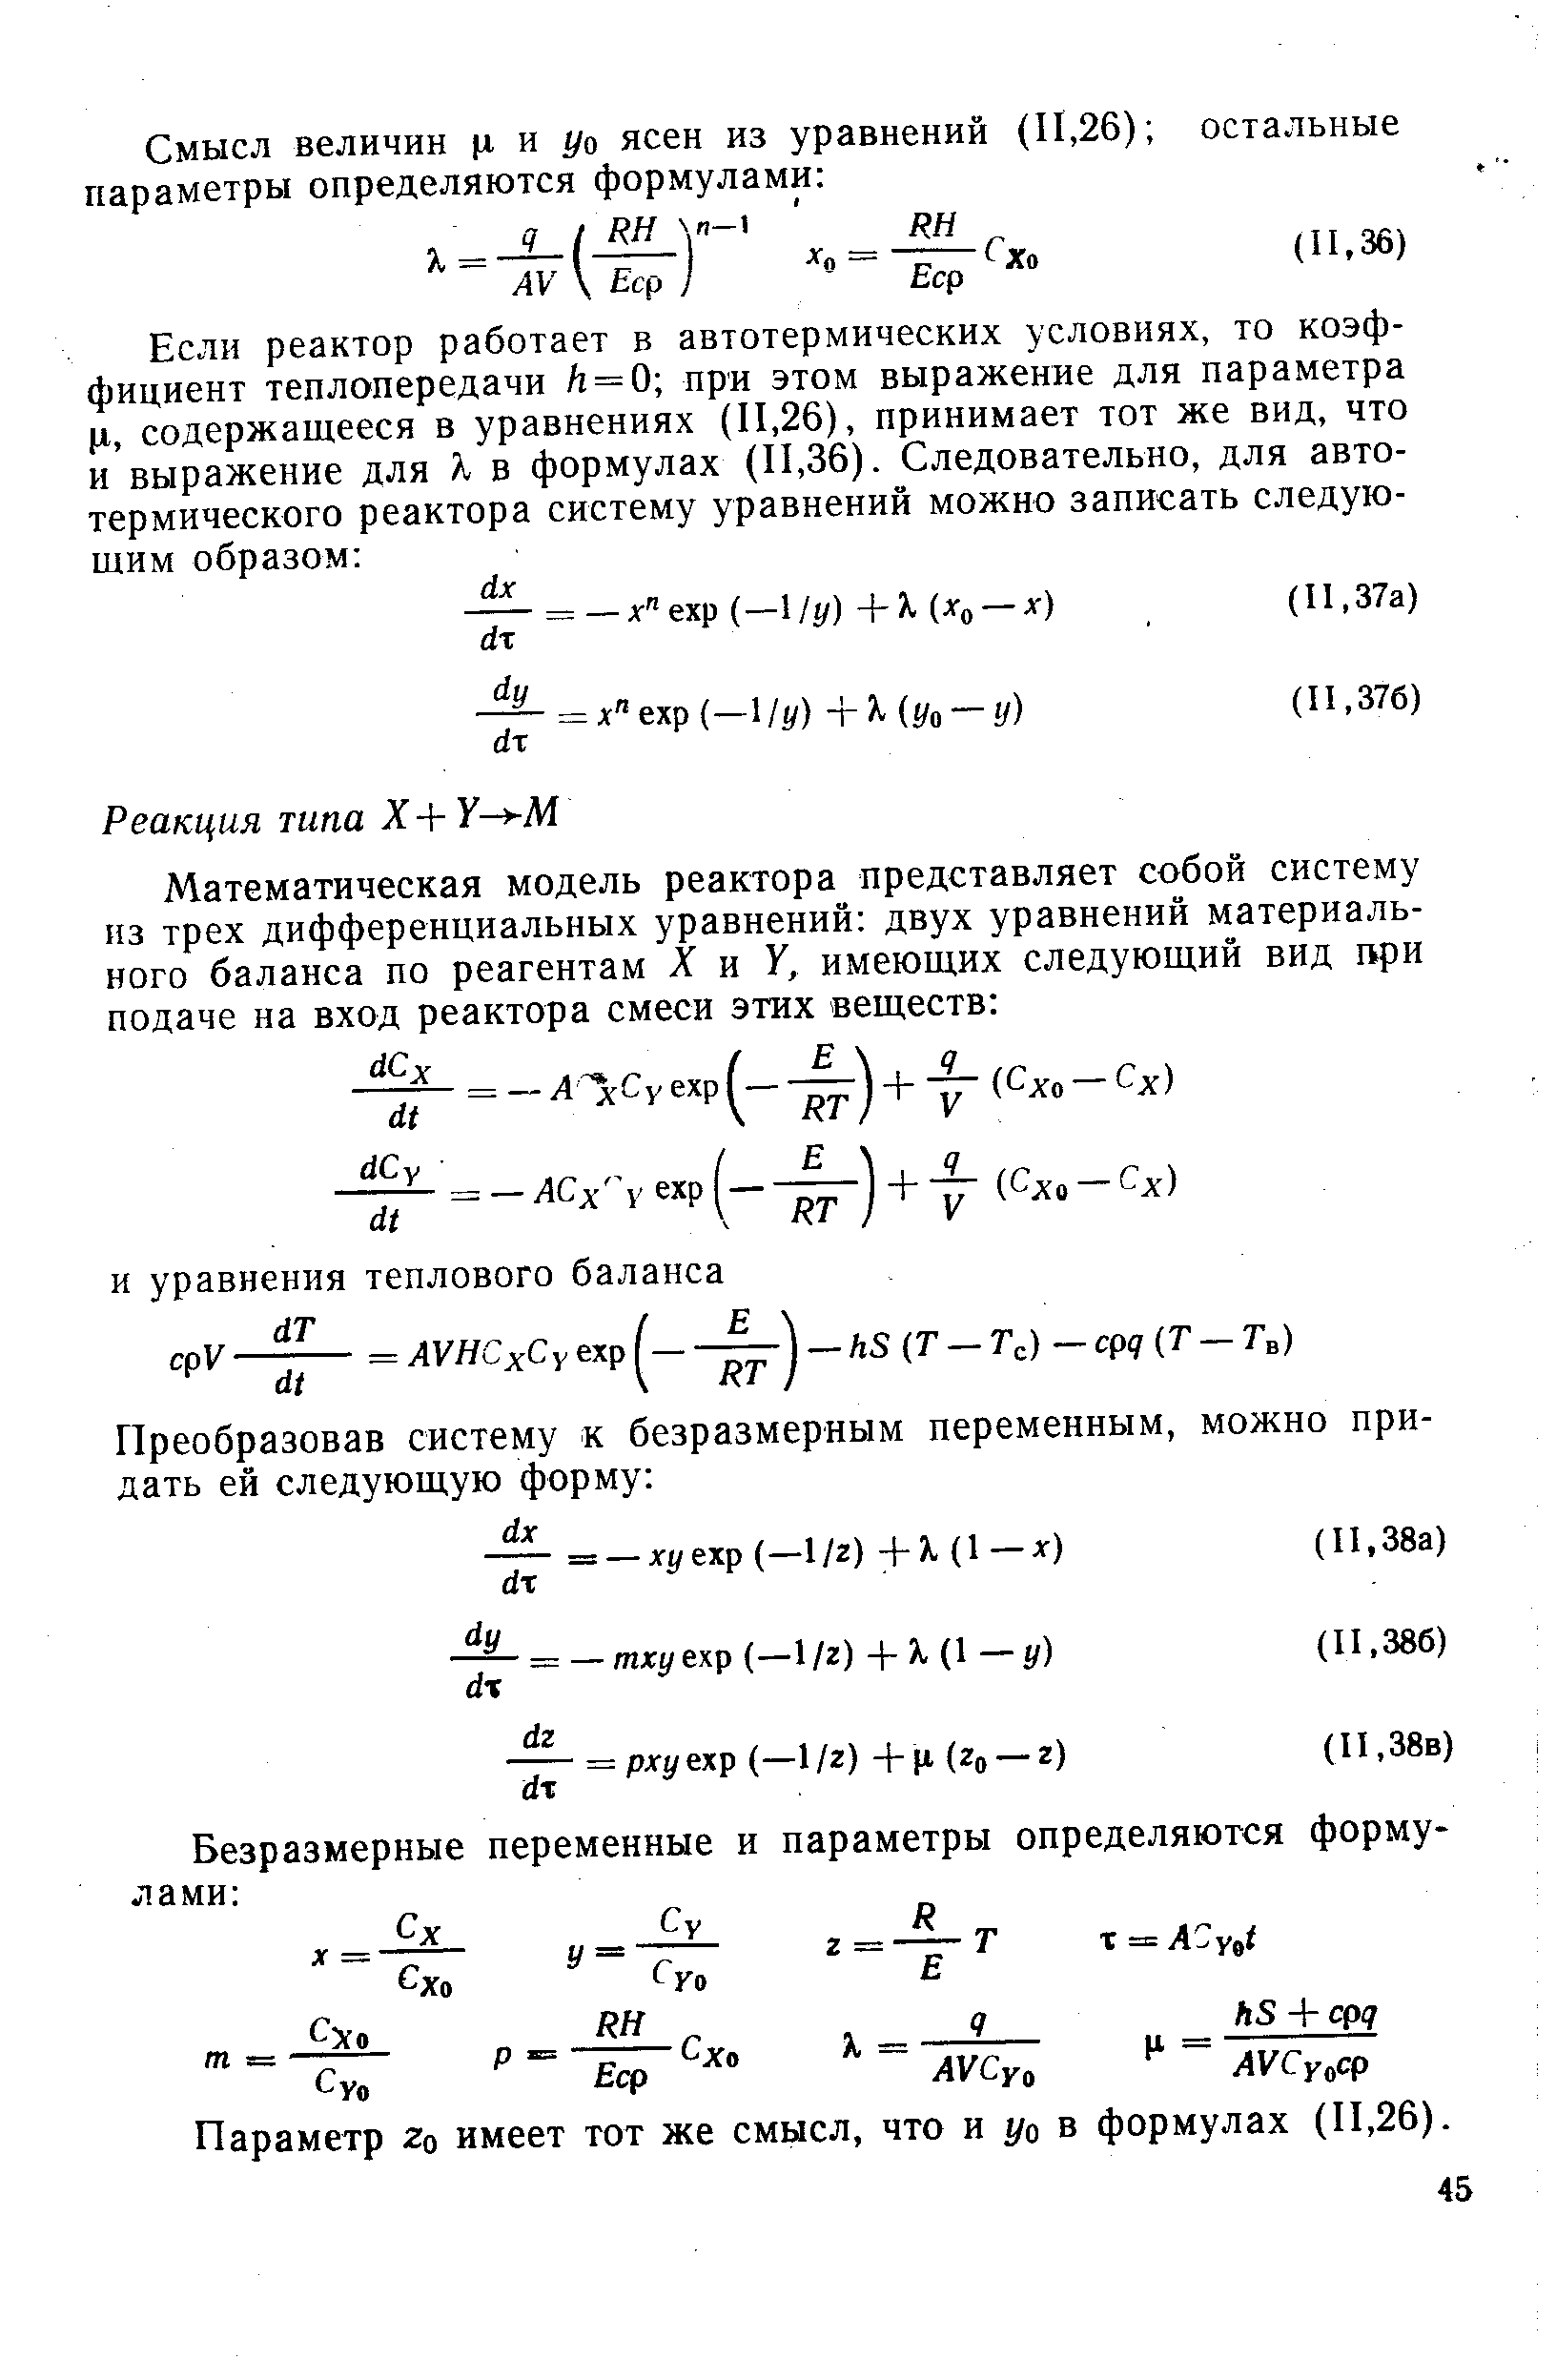 Параметр 2о имеет тот же смысл, что и уо в формулах (П,26).